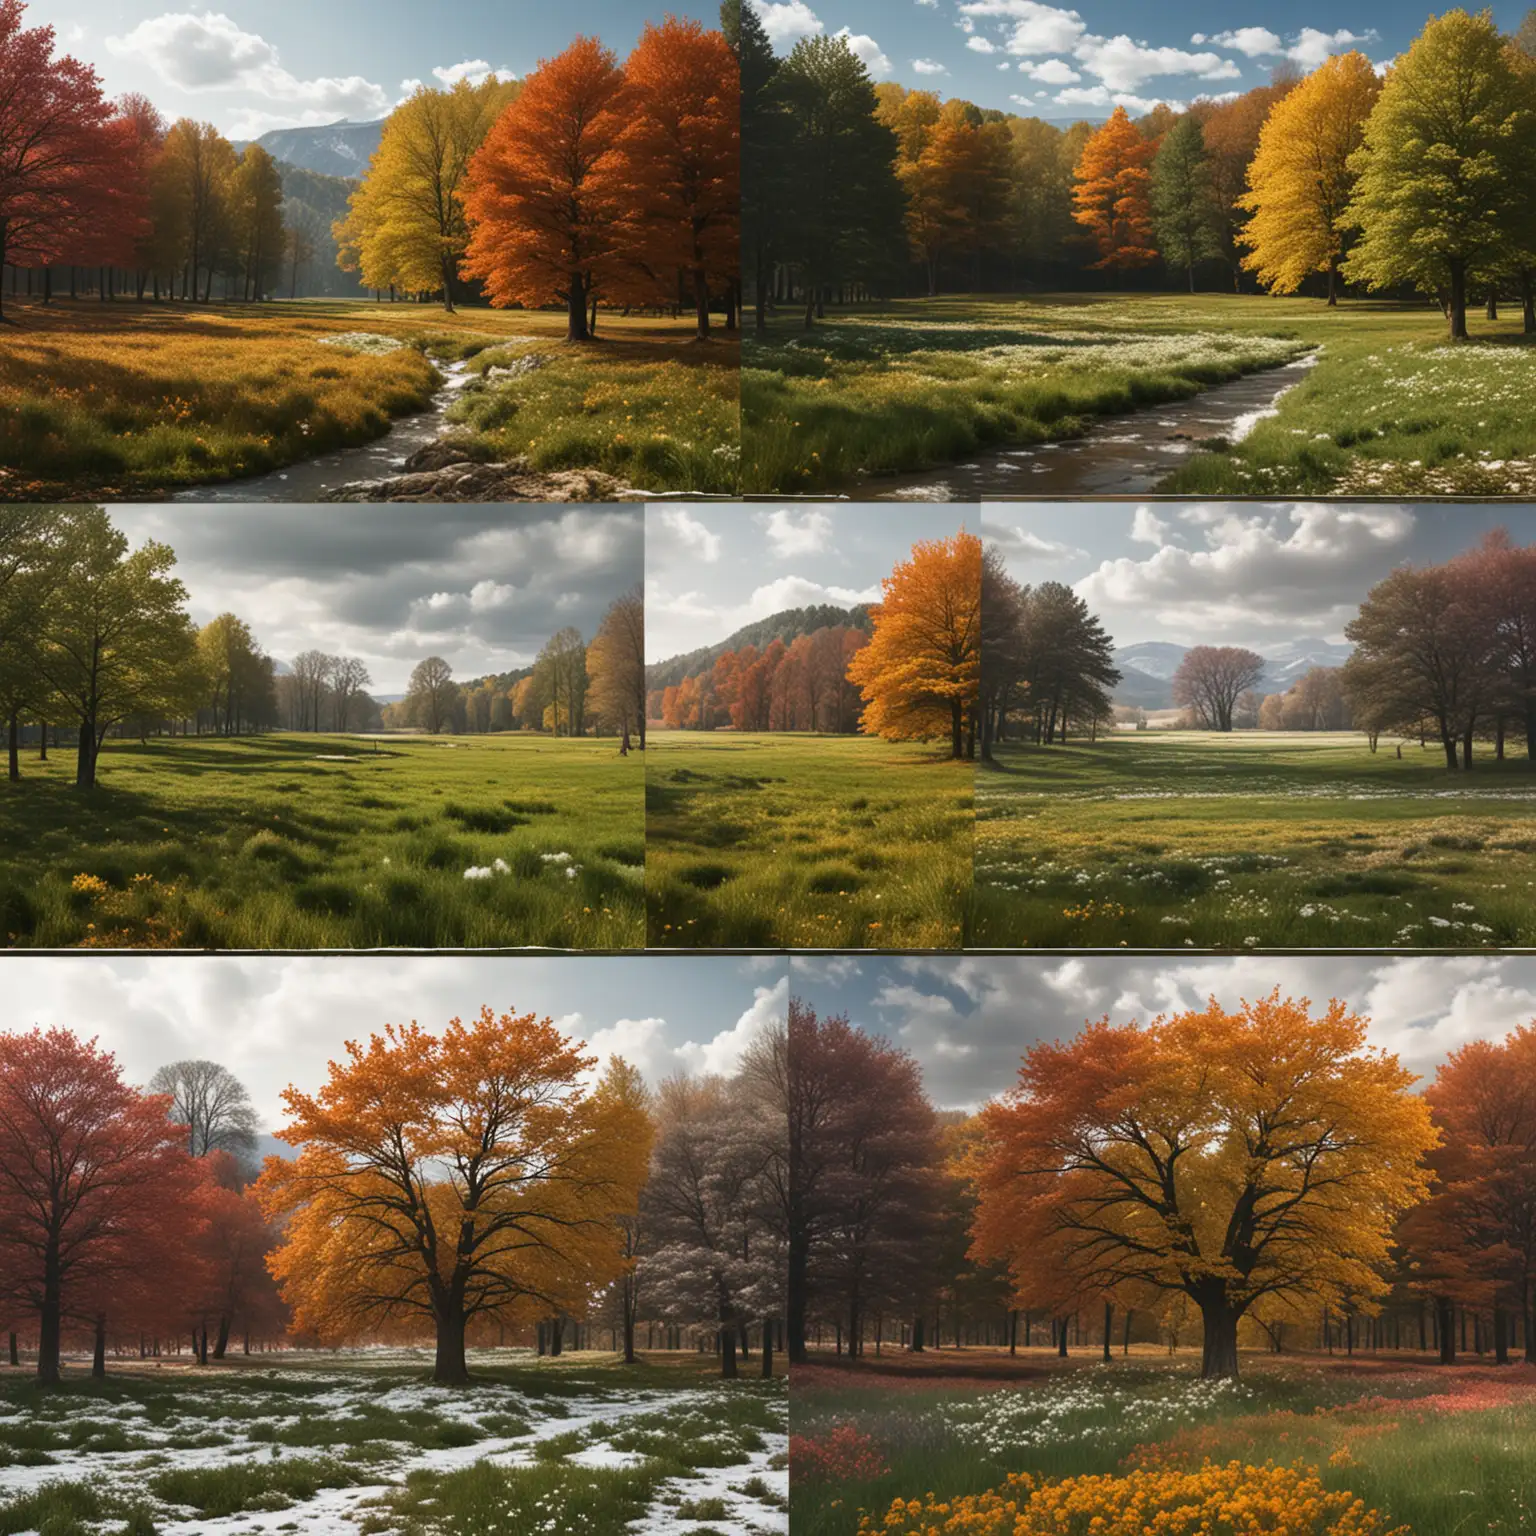 生成一张包含四季景色的图片，图片切分为左上、左下、右上和右下四个区域，每个区域展示一个季节的景色，相邻区域的景色要很好的融合，不要太割裂